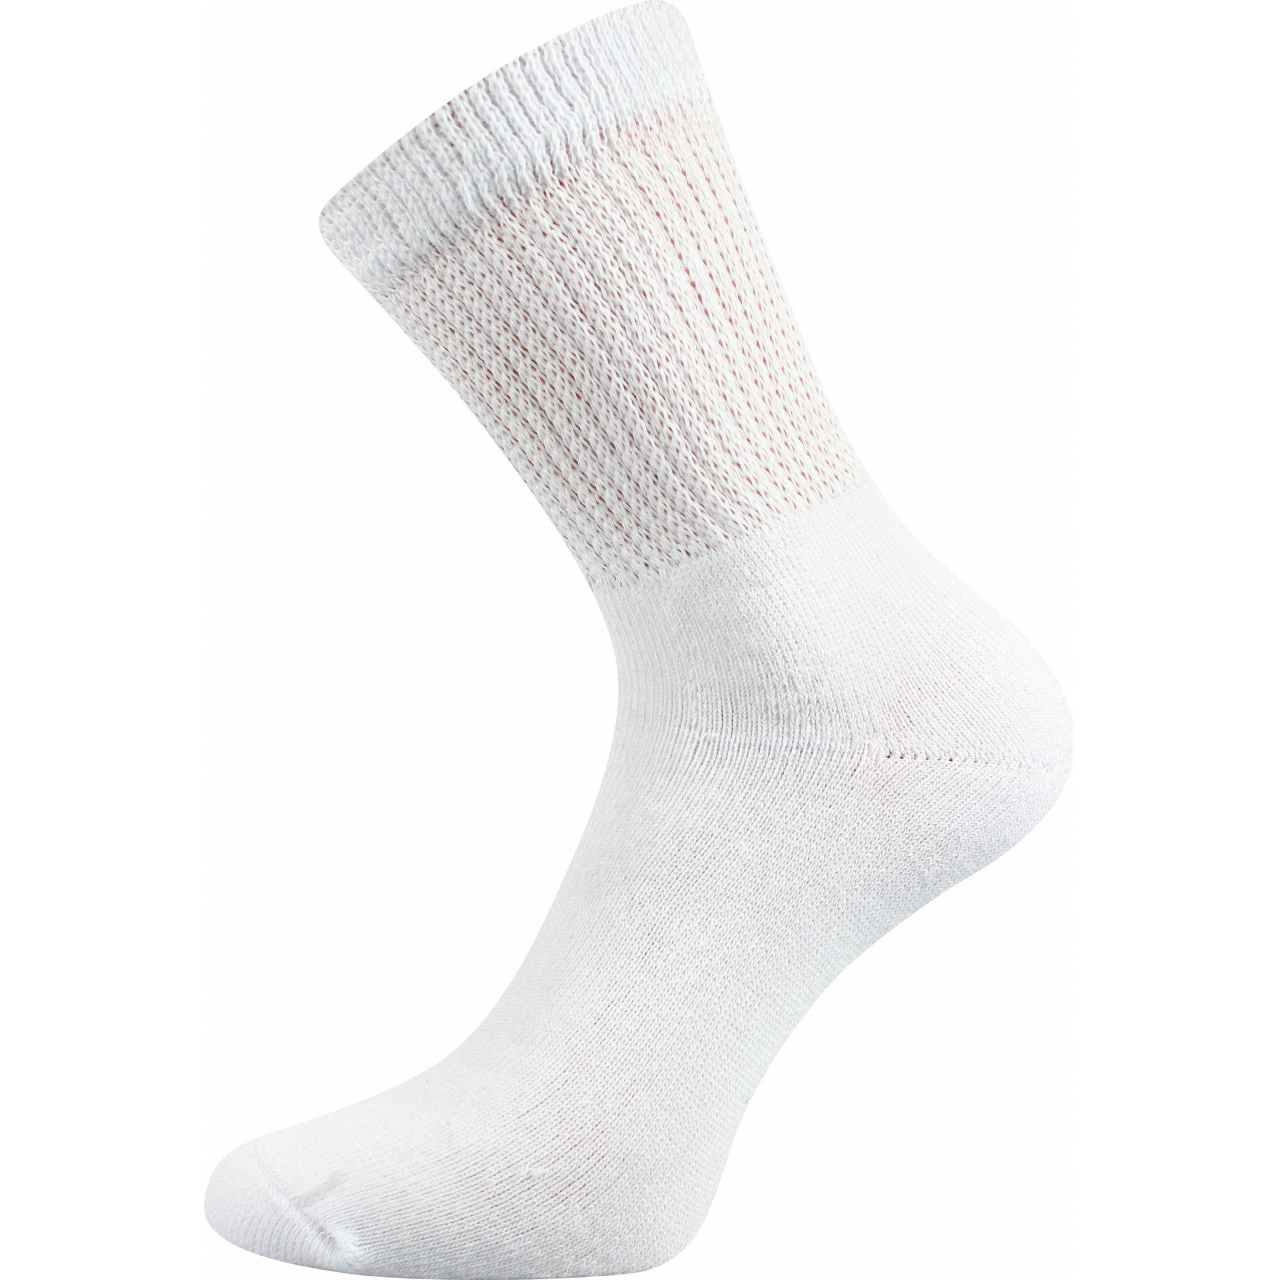 Ponožky trekingové unisex Boma 012-41-39 I - bílé, 47-50